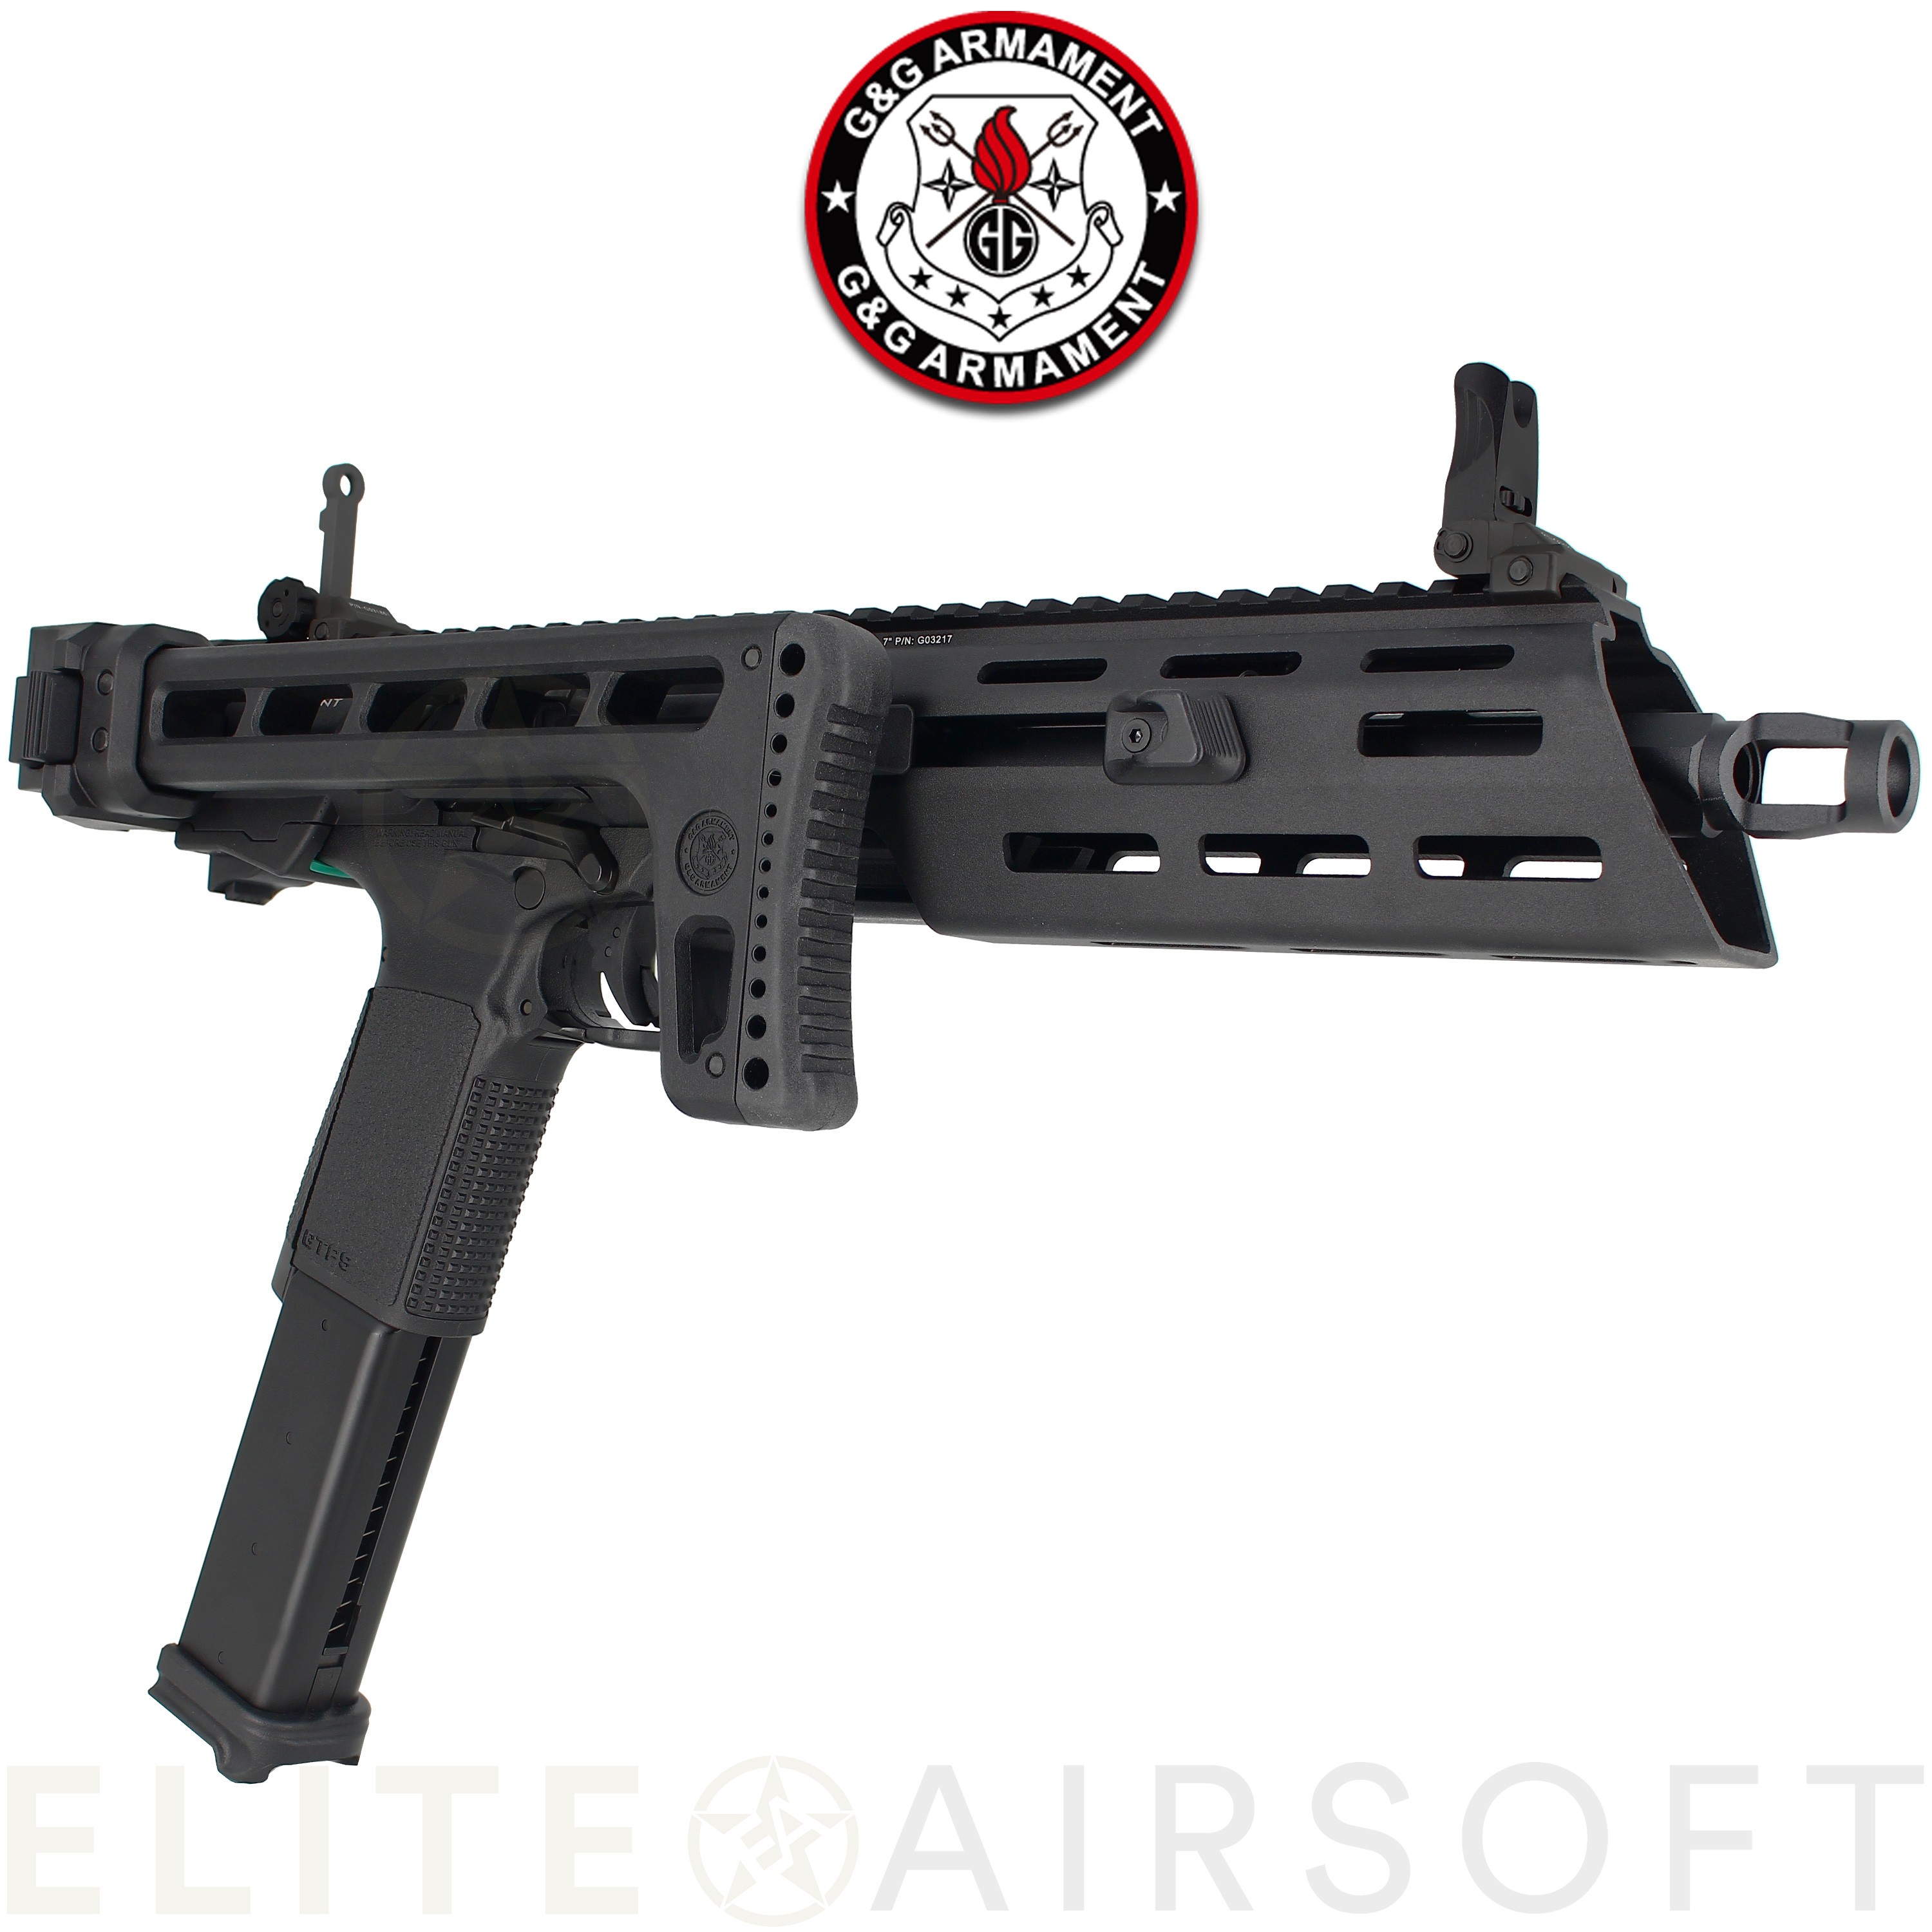 G&G - Pistolet GTP9 - GBB - Gaz - Noir/Gris (1 joules) - Elite Airsoft